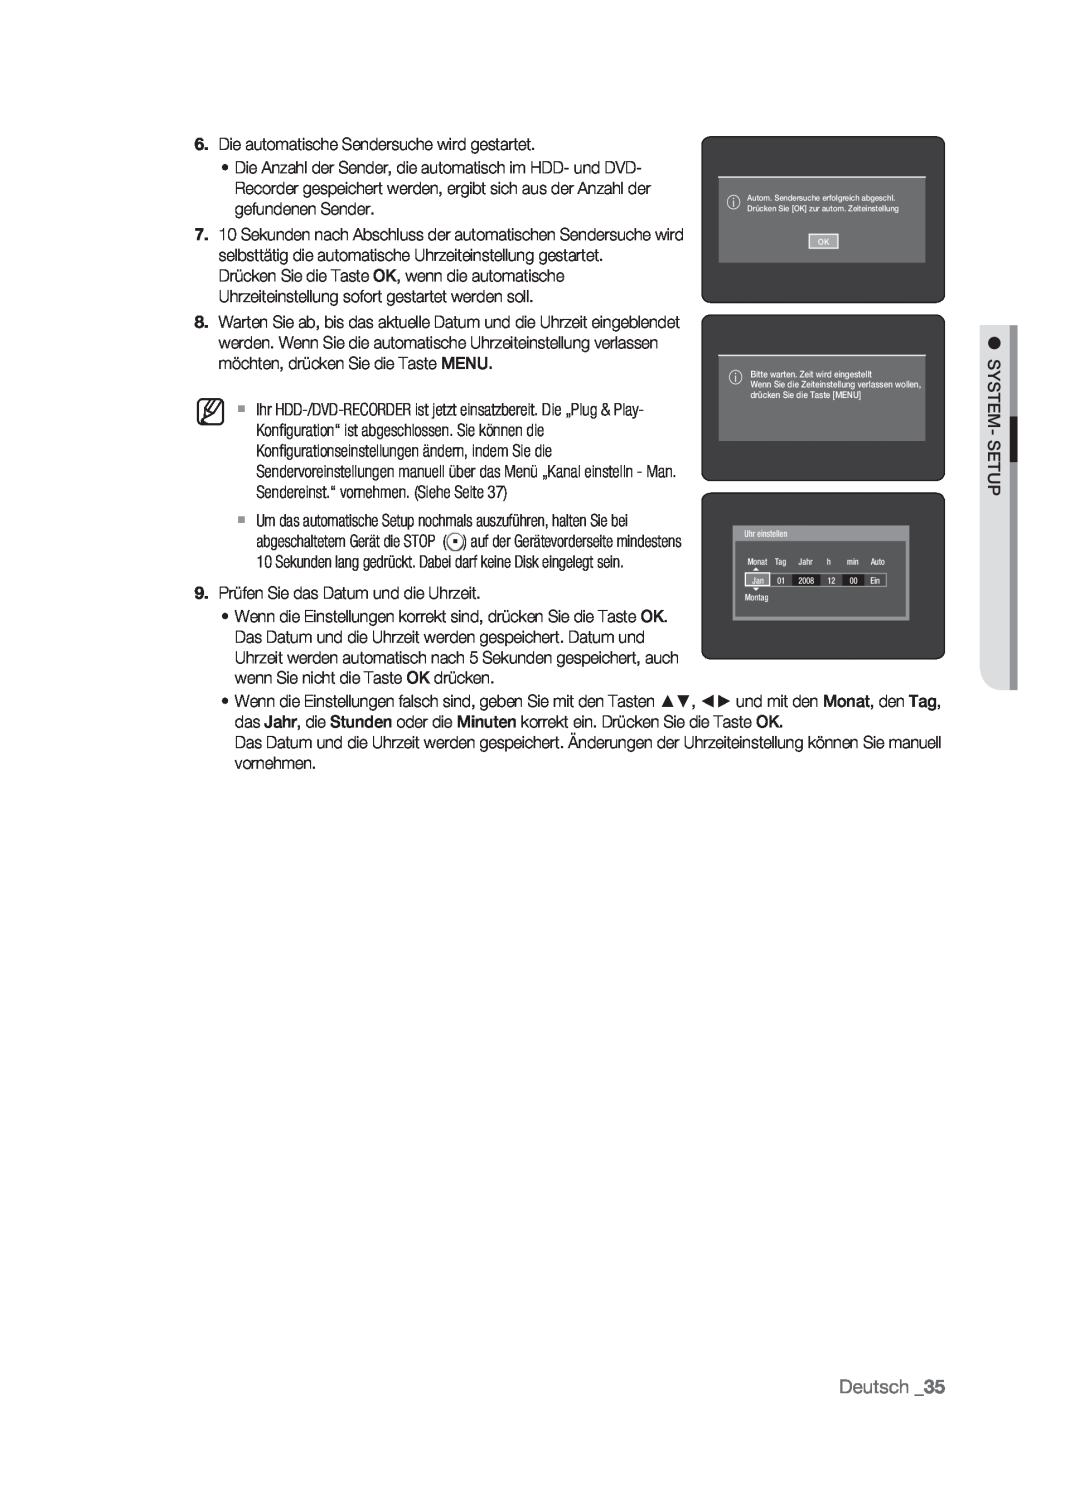 Samsung DVD-HR773/AUS manual Deutsch, Die automatische Sendersuche wird gestartet, 9. Prüfen Sie das Datum und die Uhrzeit 